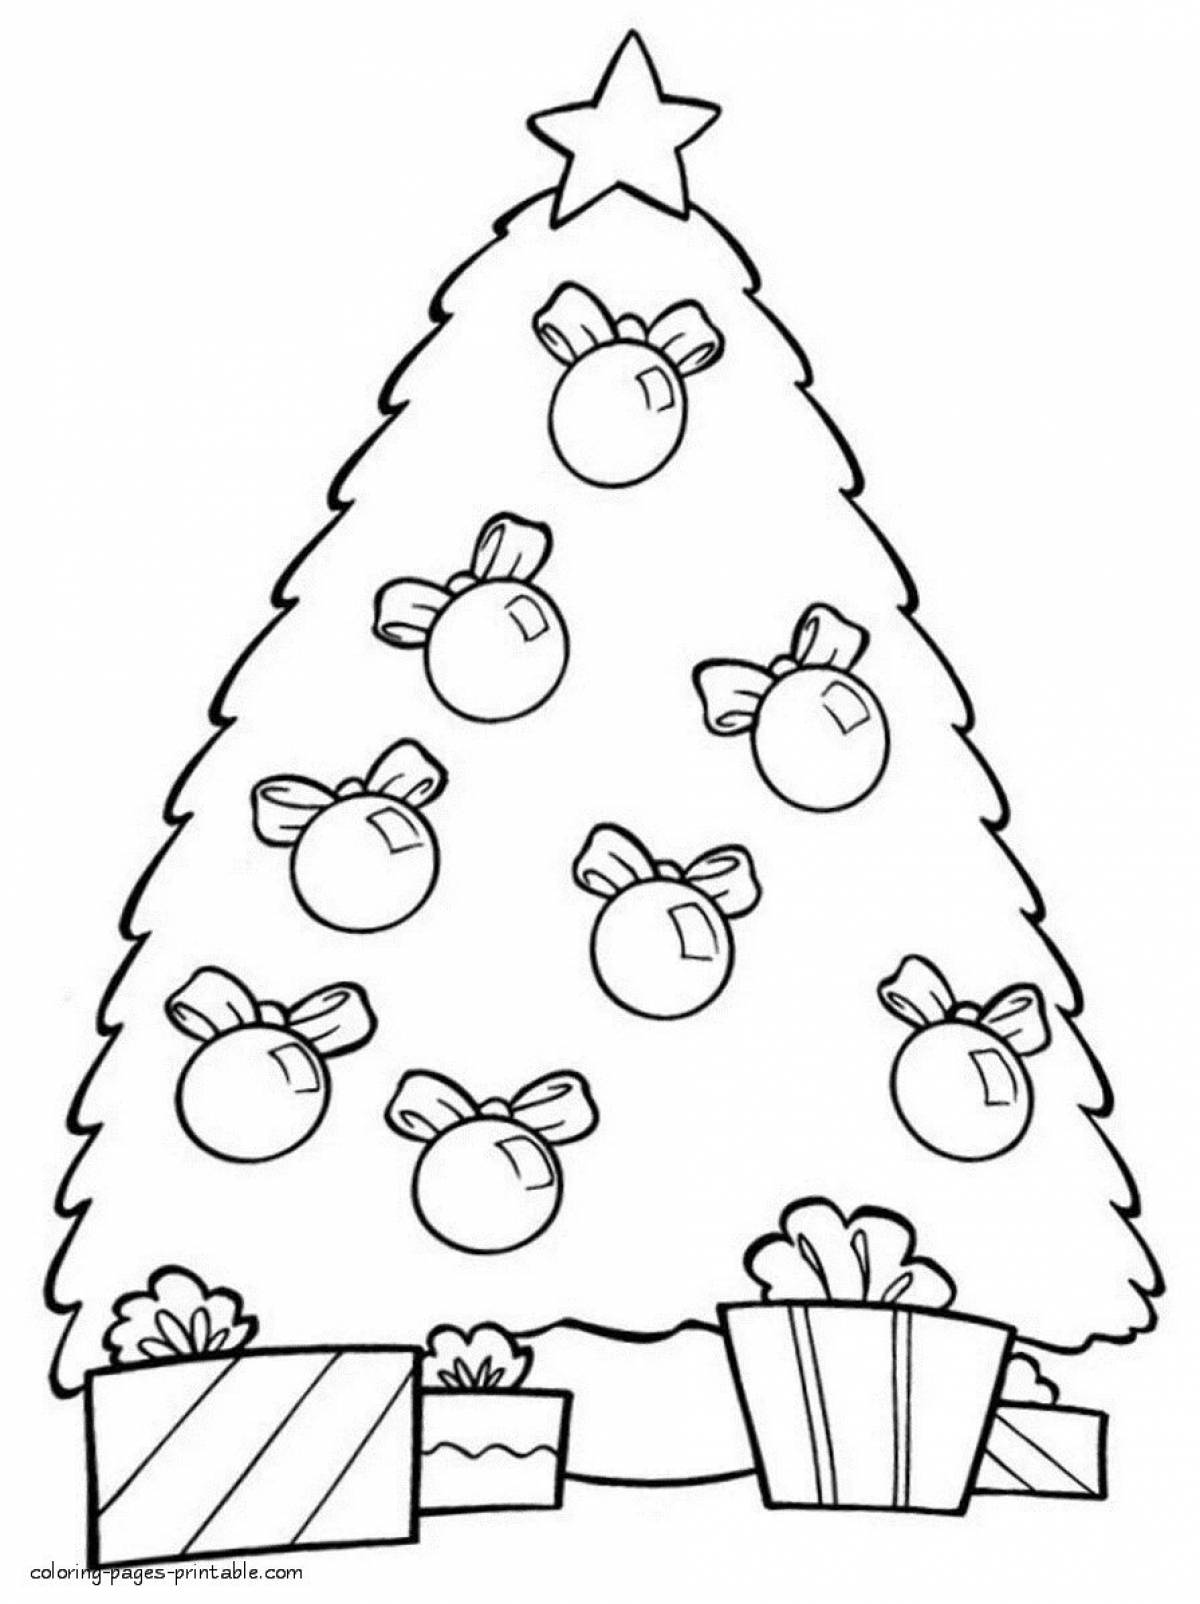 Игривая страница раскраски рождественской елки для детей 3-4 лет